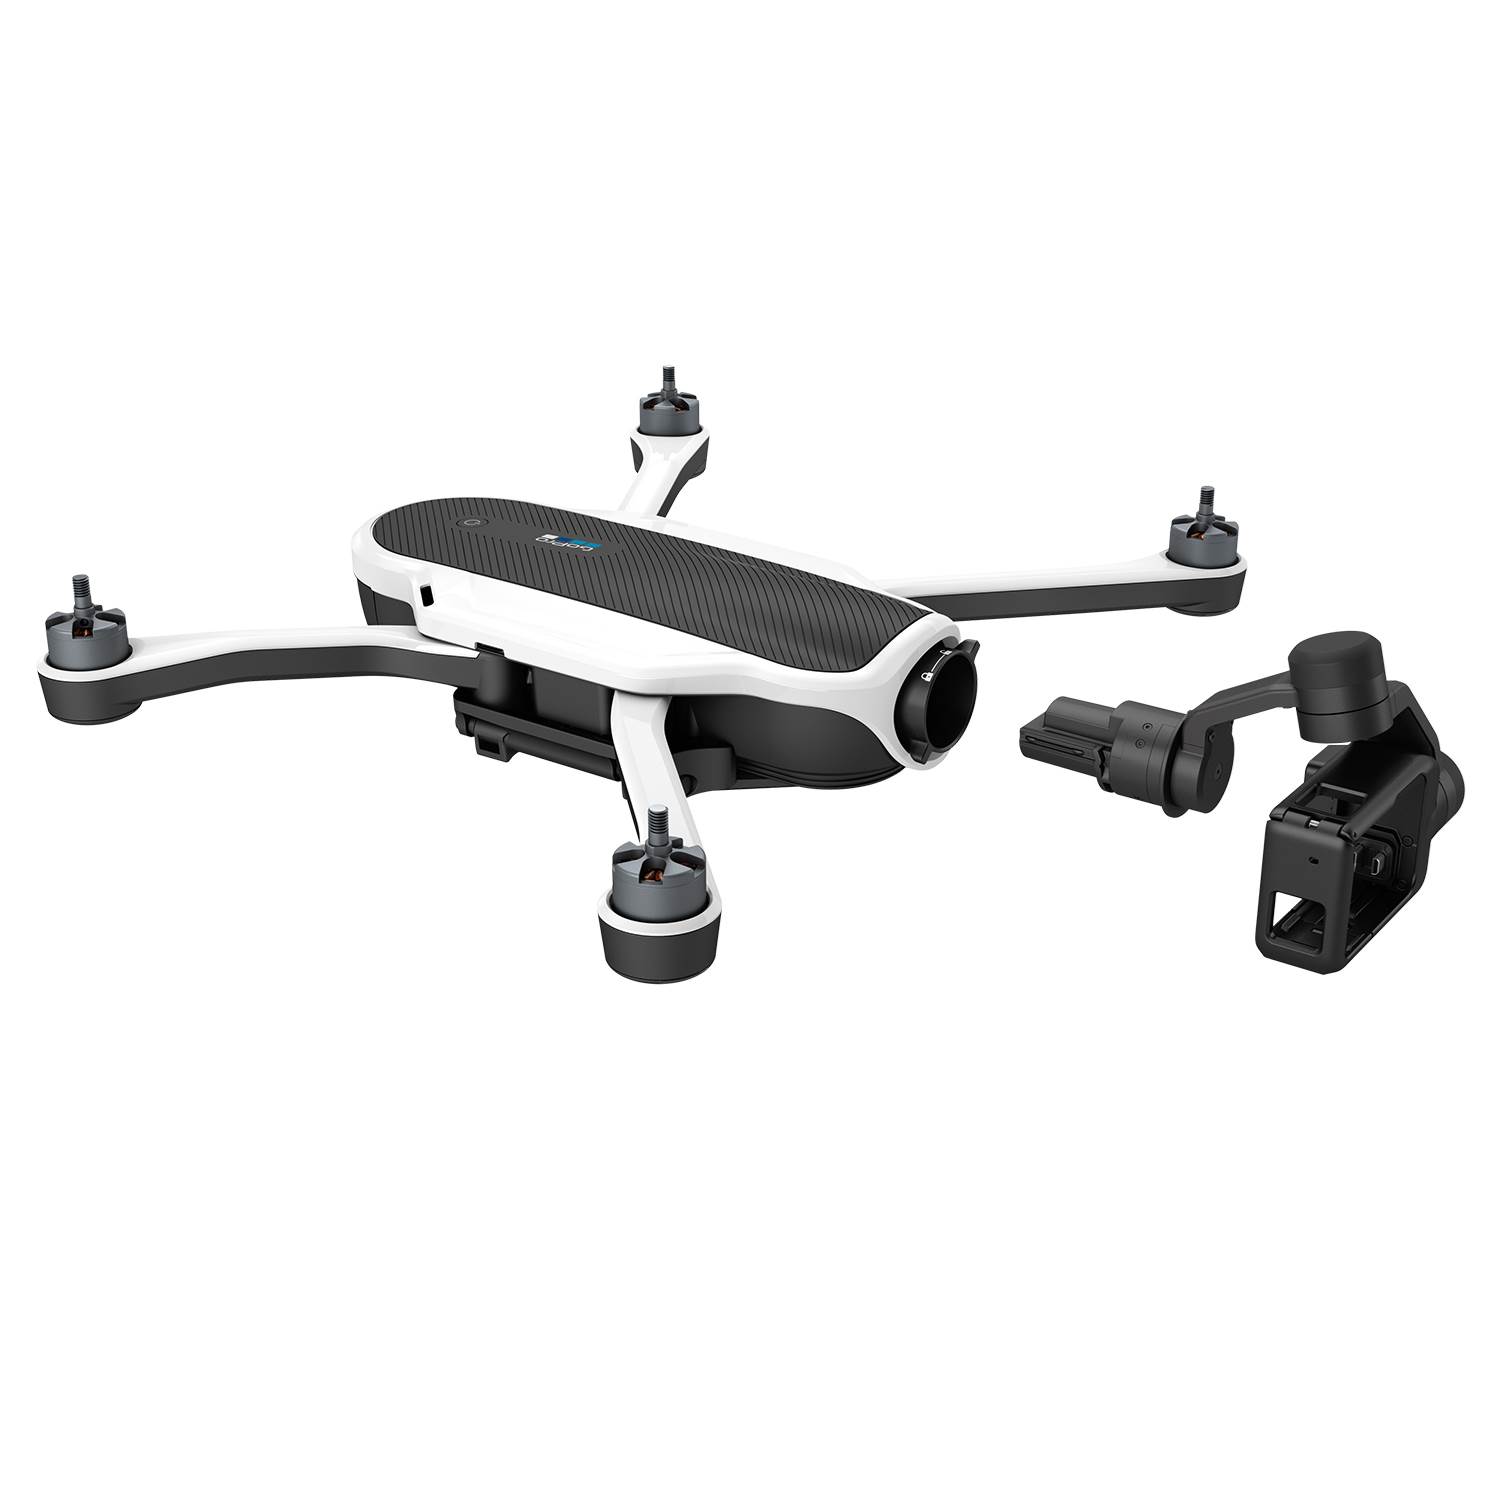 Katlanabilir GoPro Karma drone modeli duyuruldu